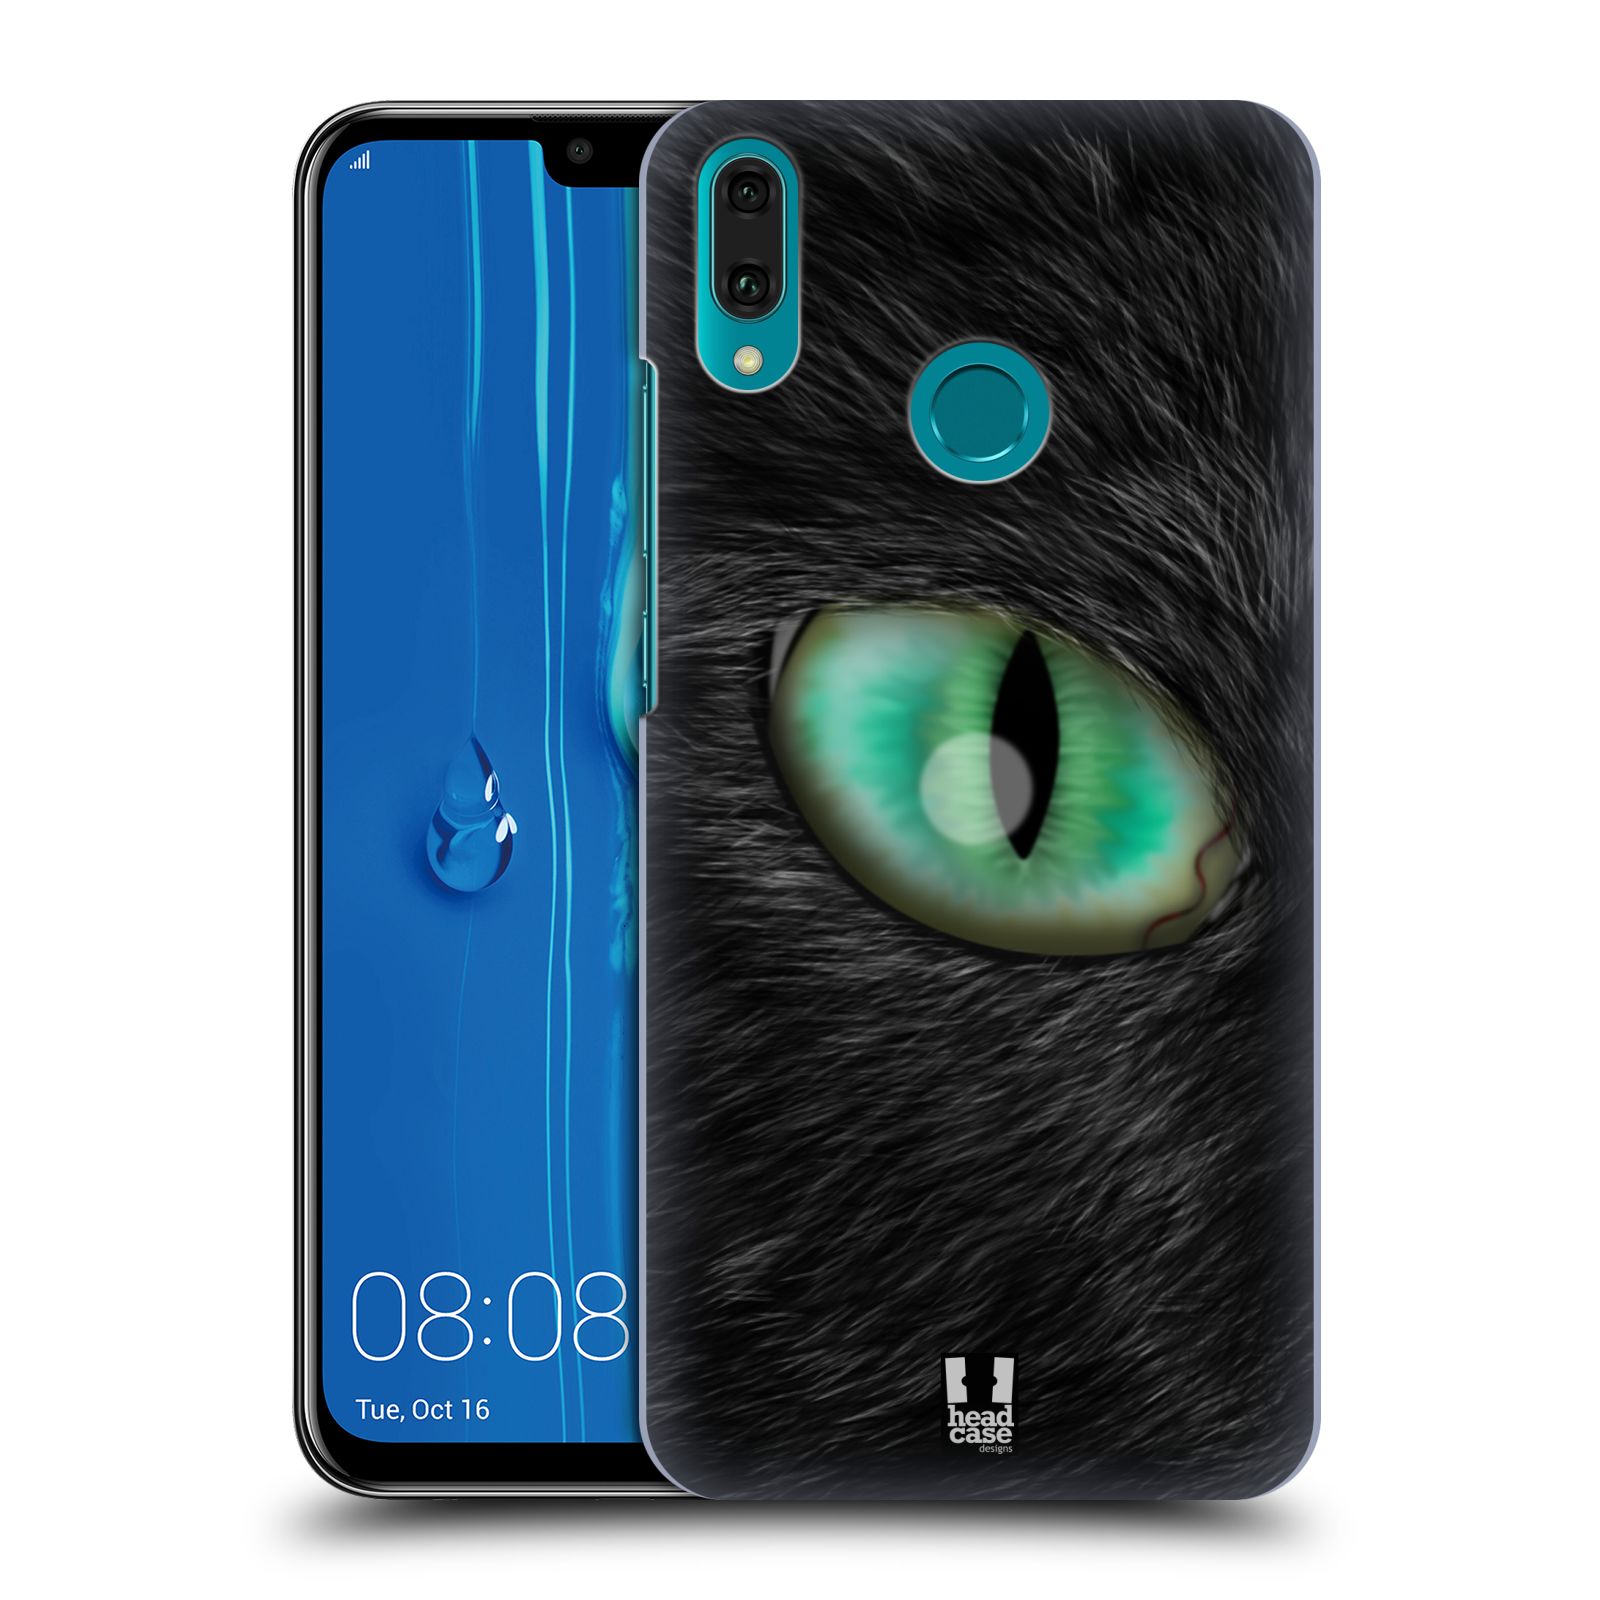 Pouzdro na mobil Huawei Y9 2019 - HEAD CASE - vzor pohled zvířete oko kočka